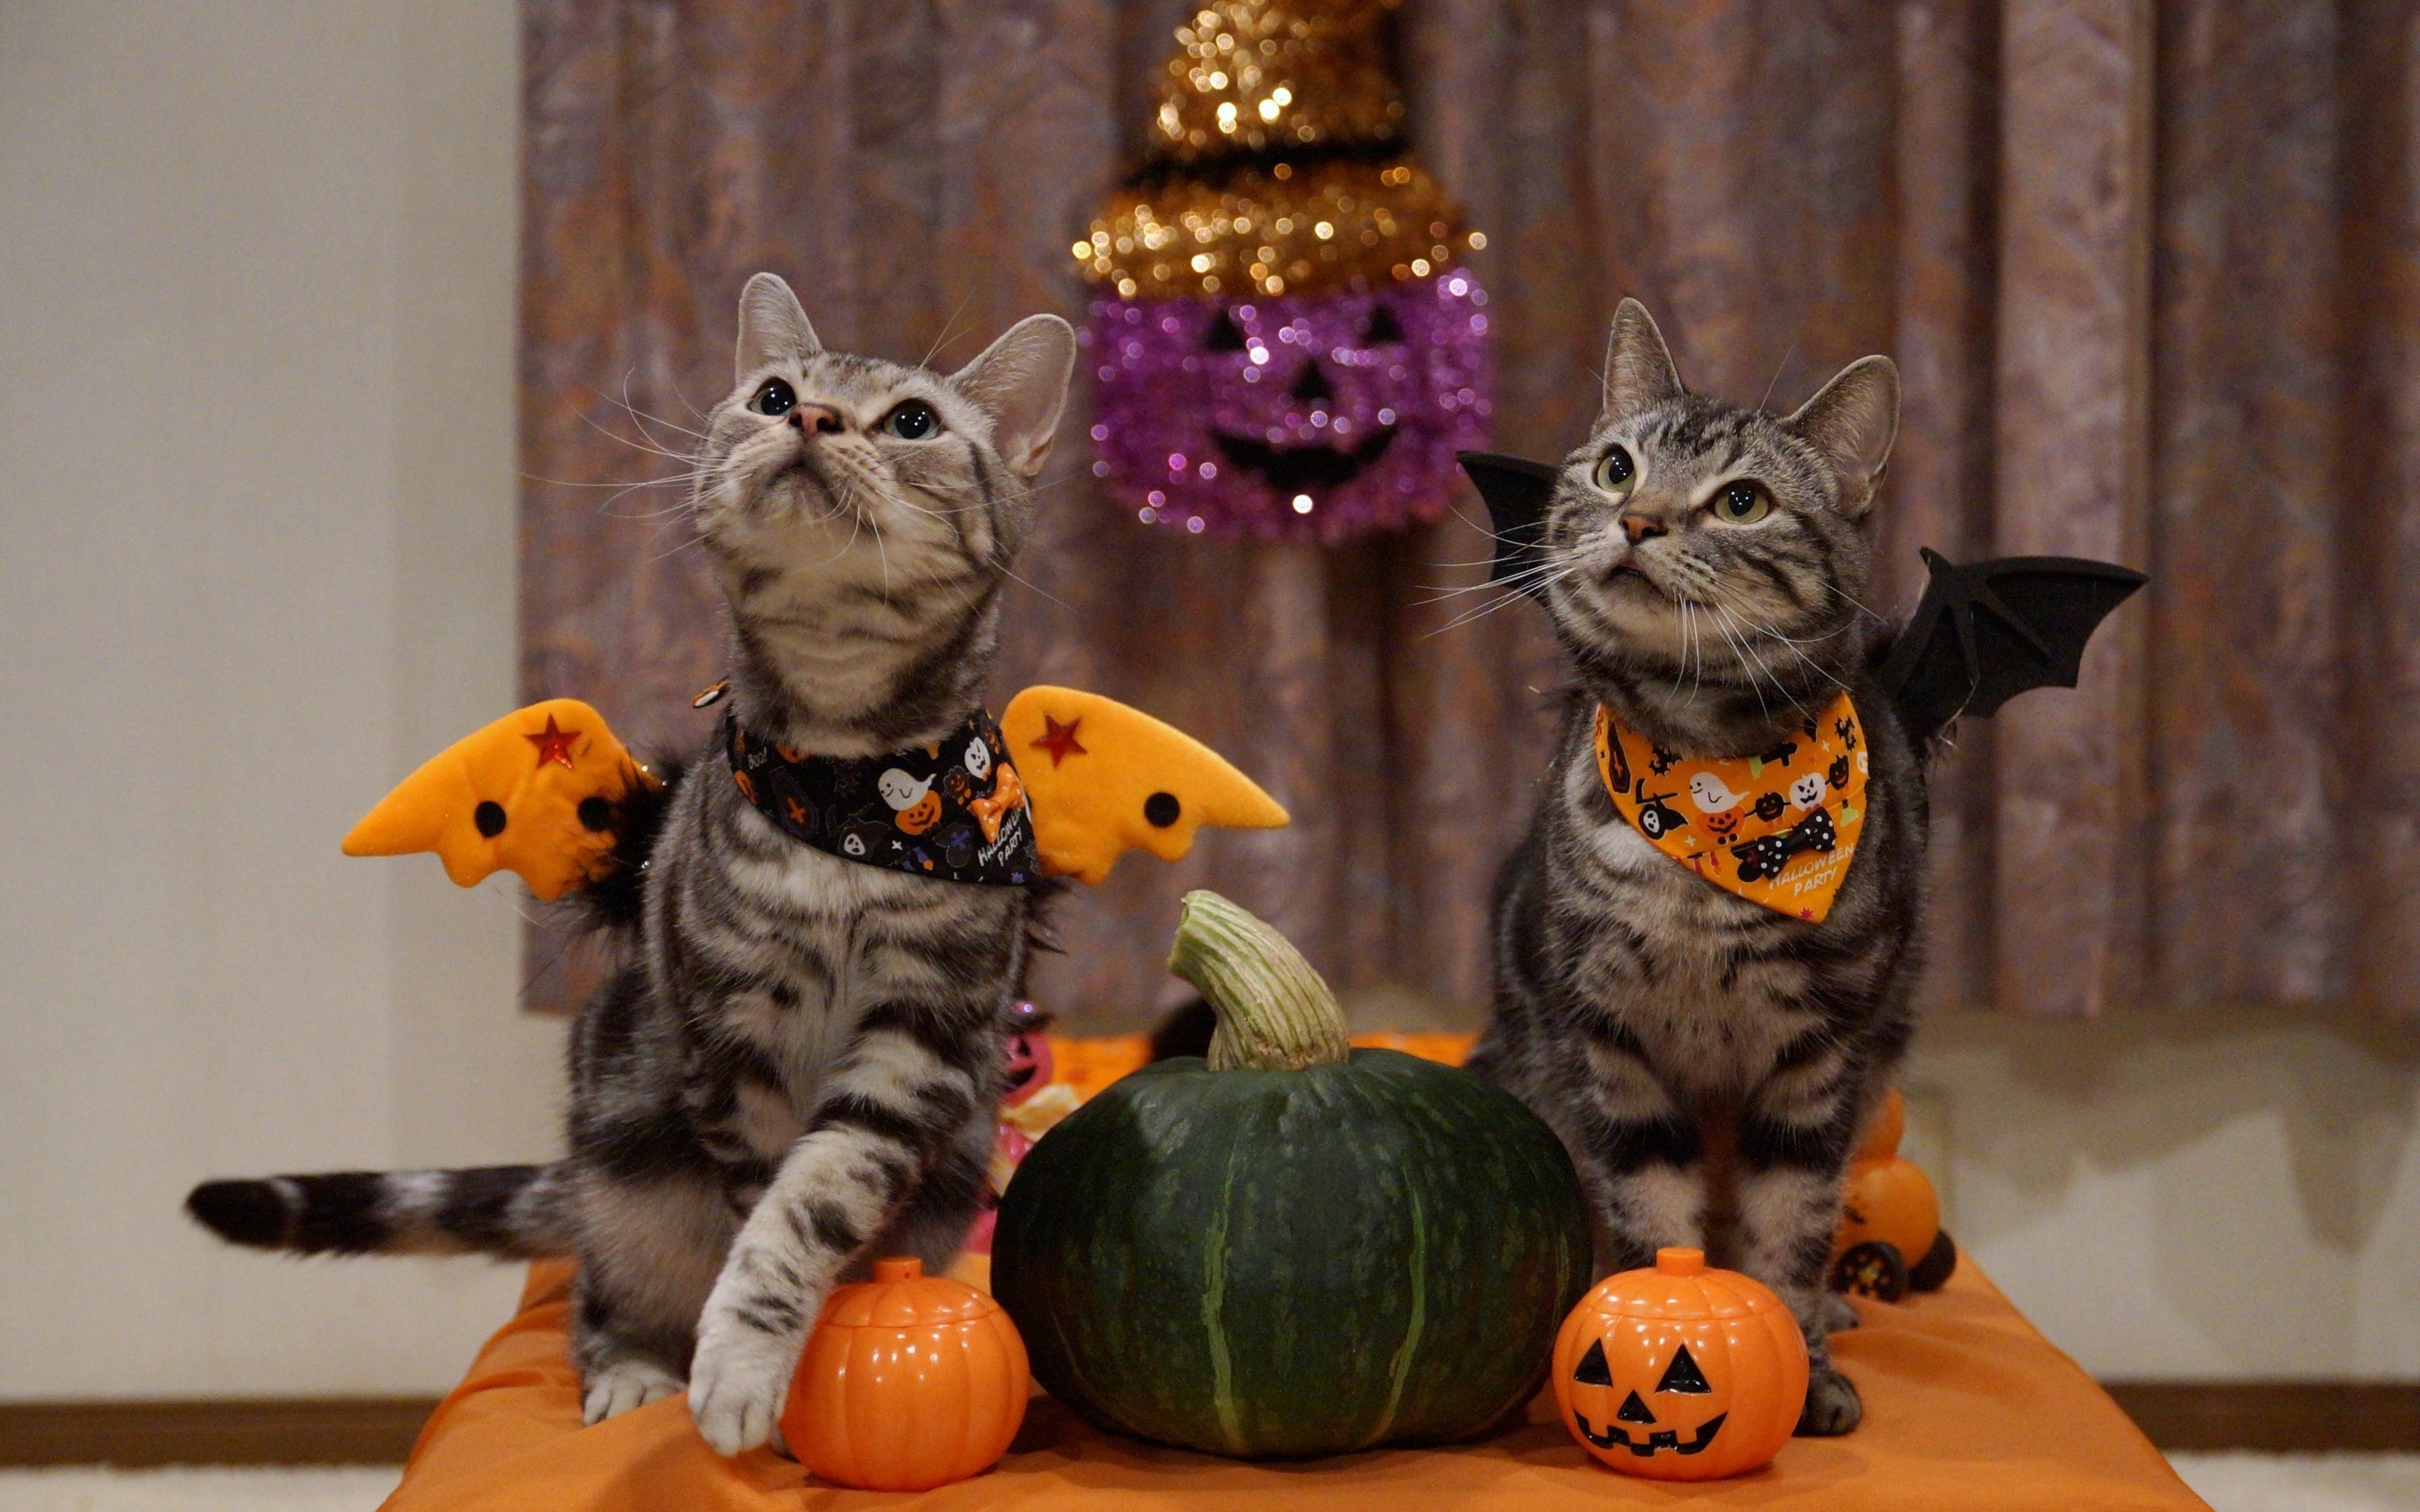 2880x1800 ... Halloween Cat Desktop Wallpaper. Share: Facebook Pinterest Twitter  Google+